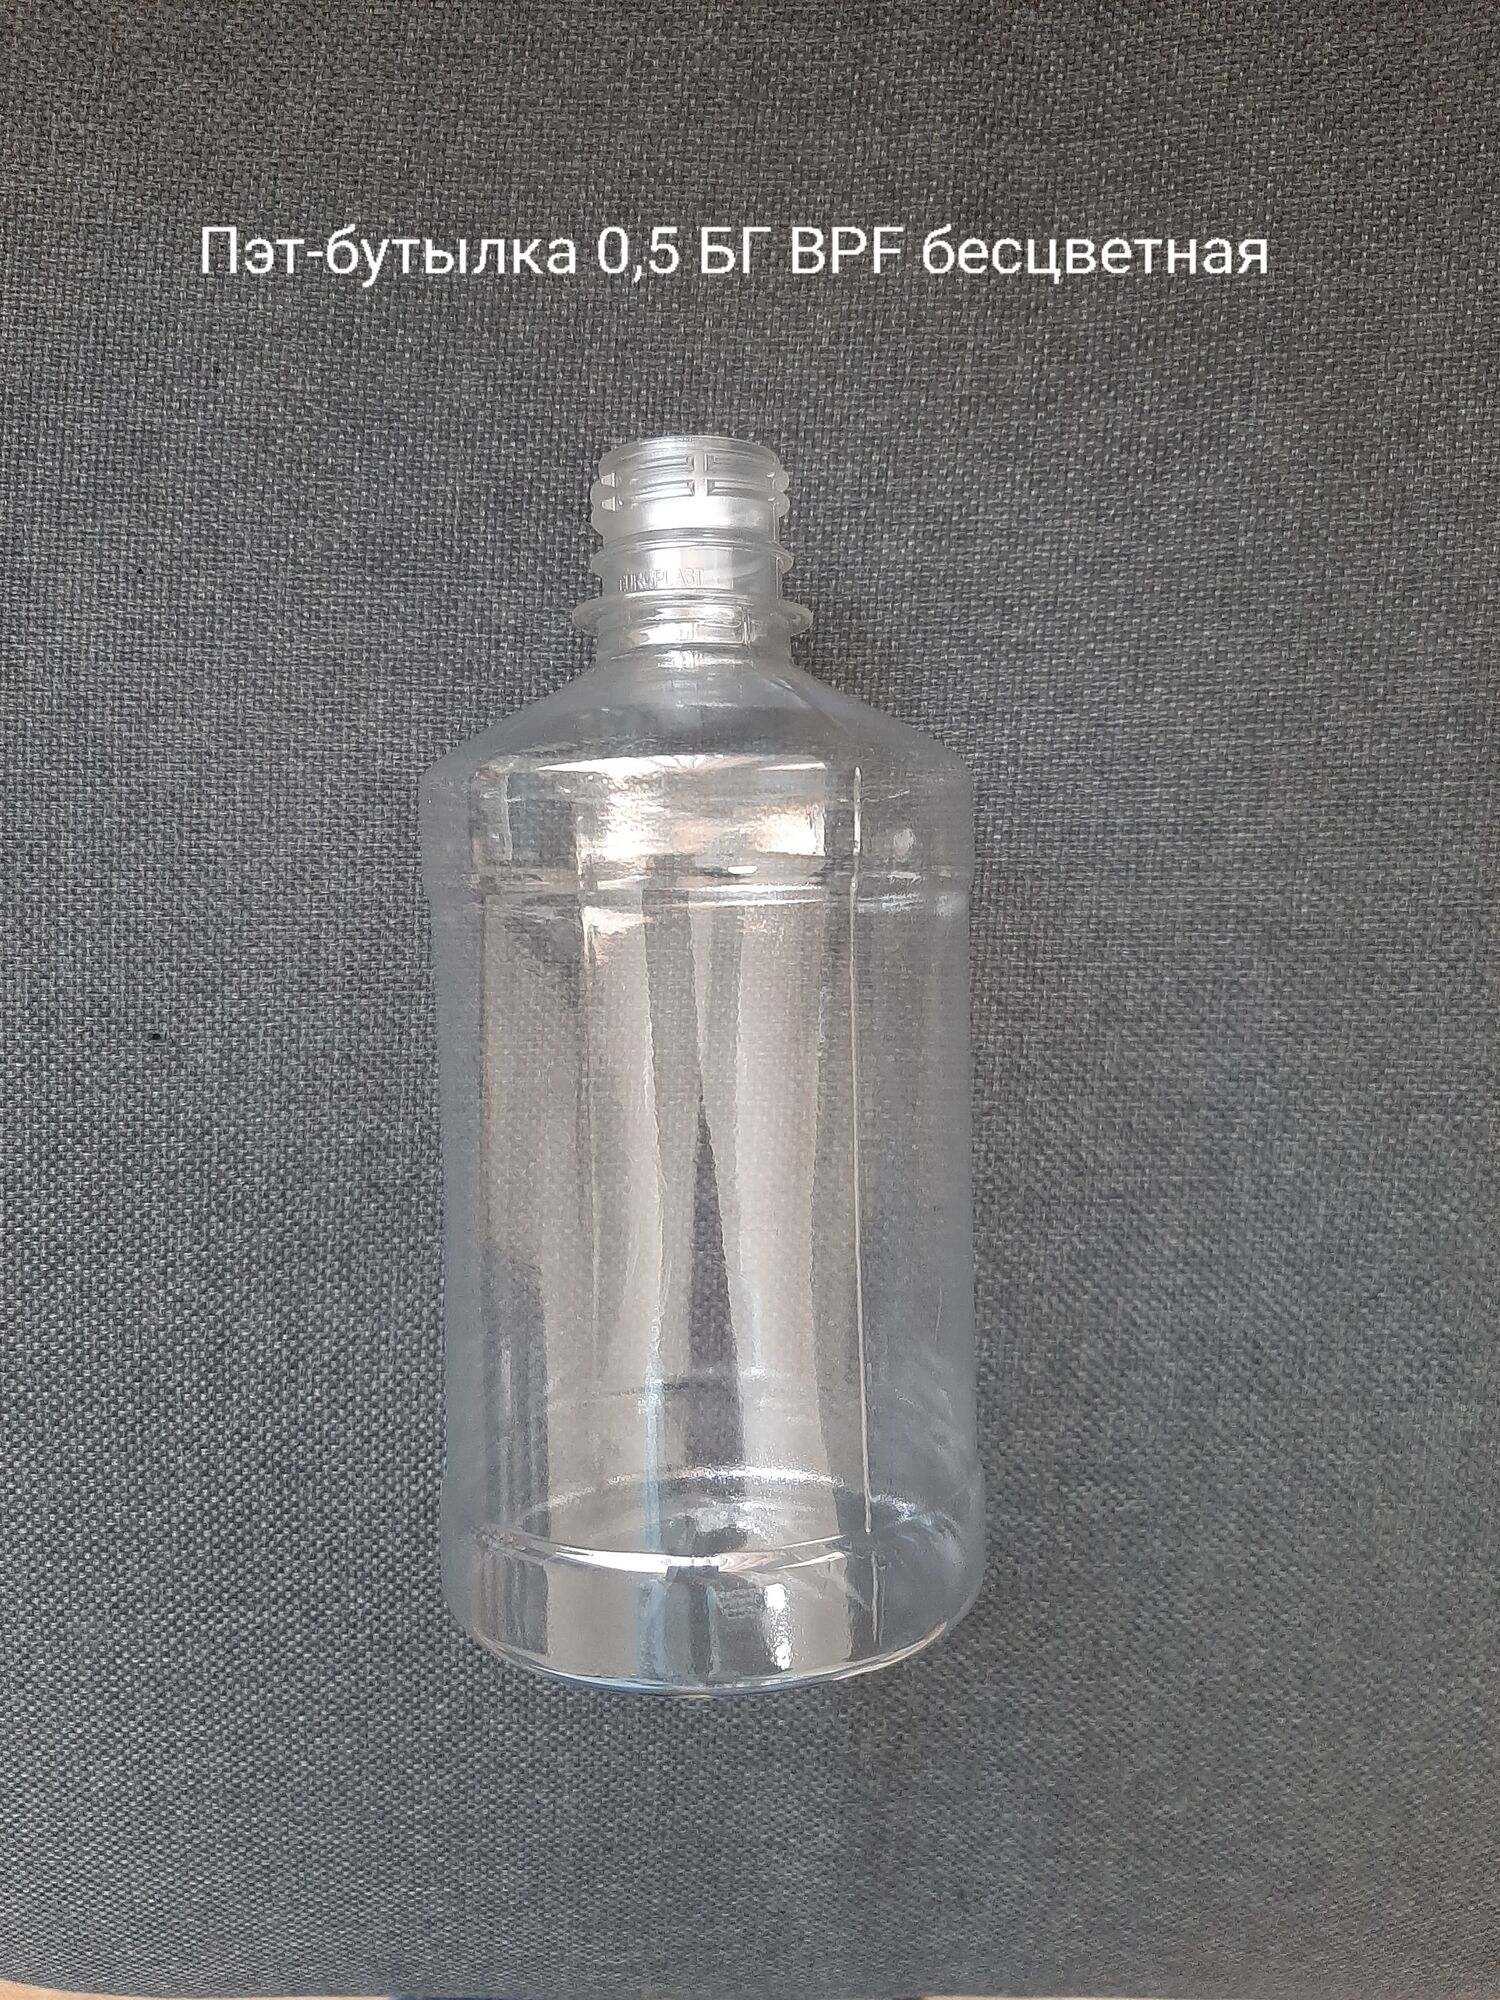 Пэт-бутылка 0,5БГ BPF,бесцветная (200 шт в упаковке) вес 24 гр.